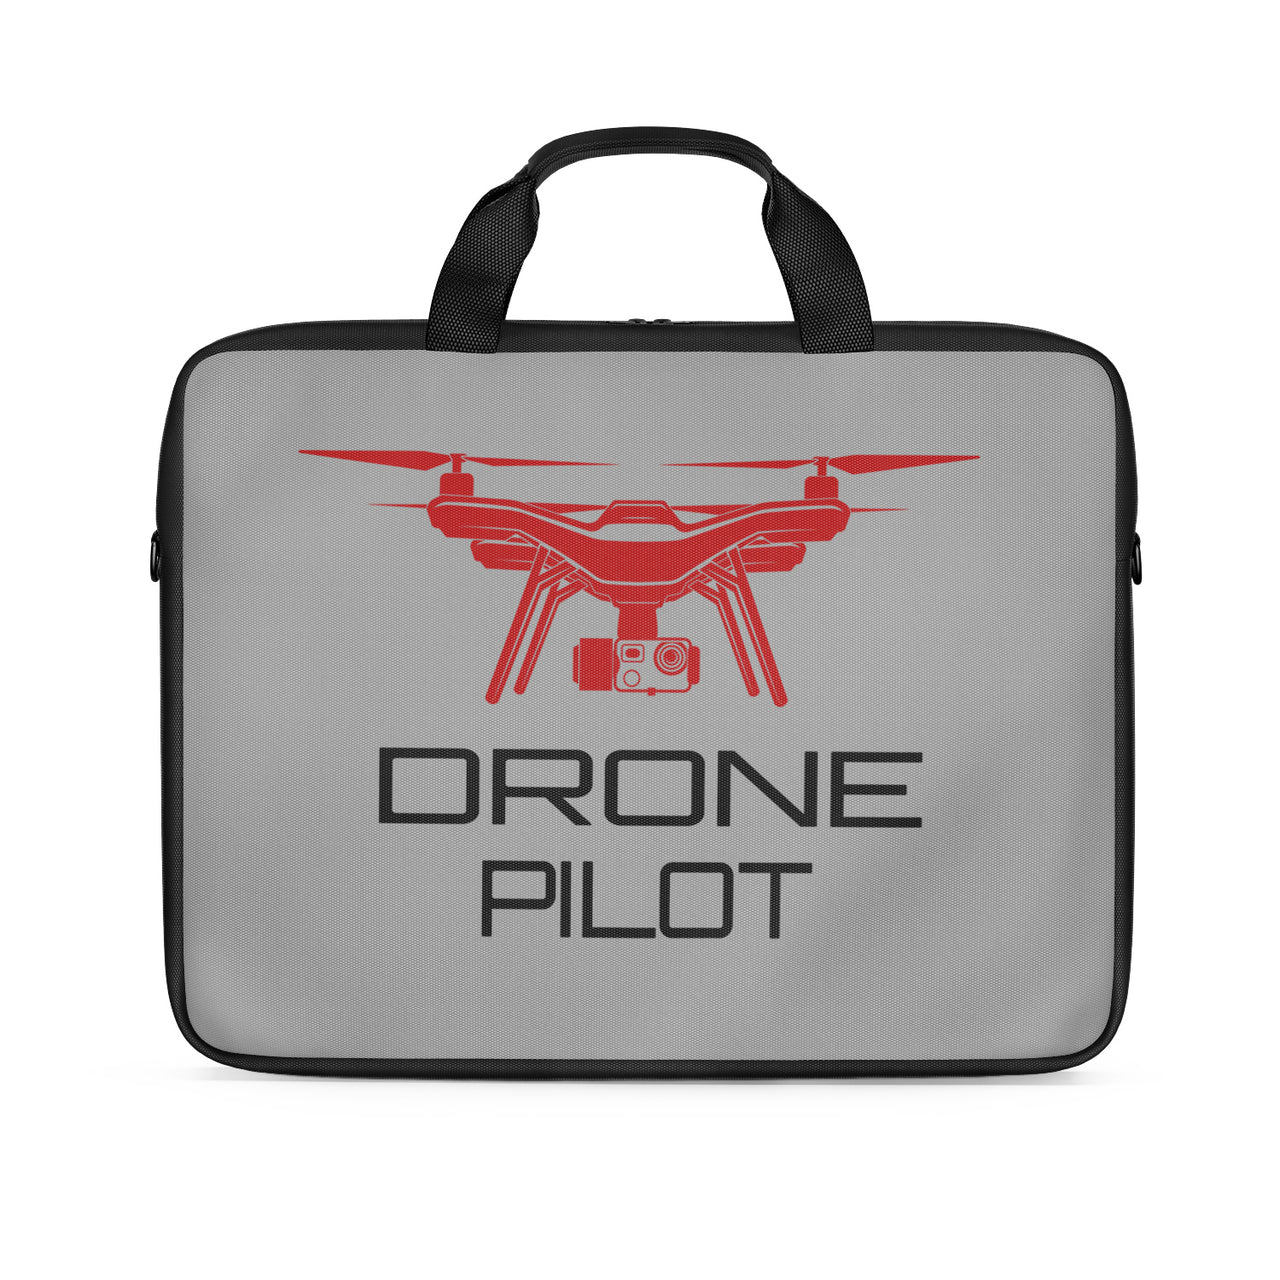 Drone Pilot Designed Laptop & Tablet Bags